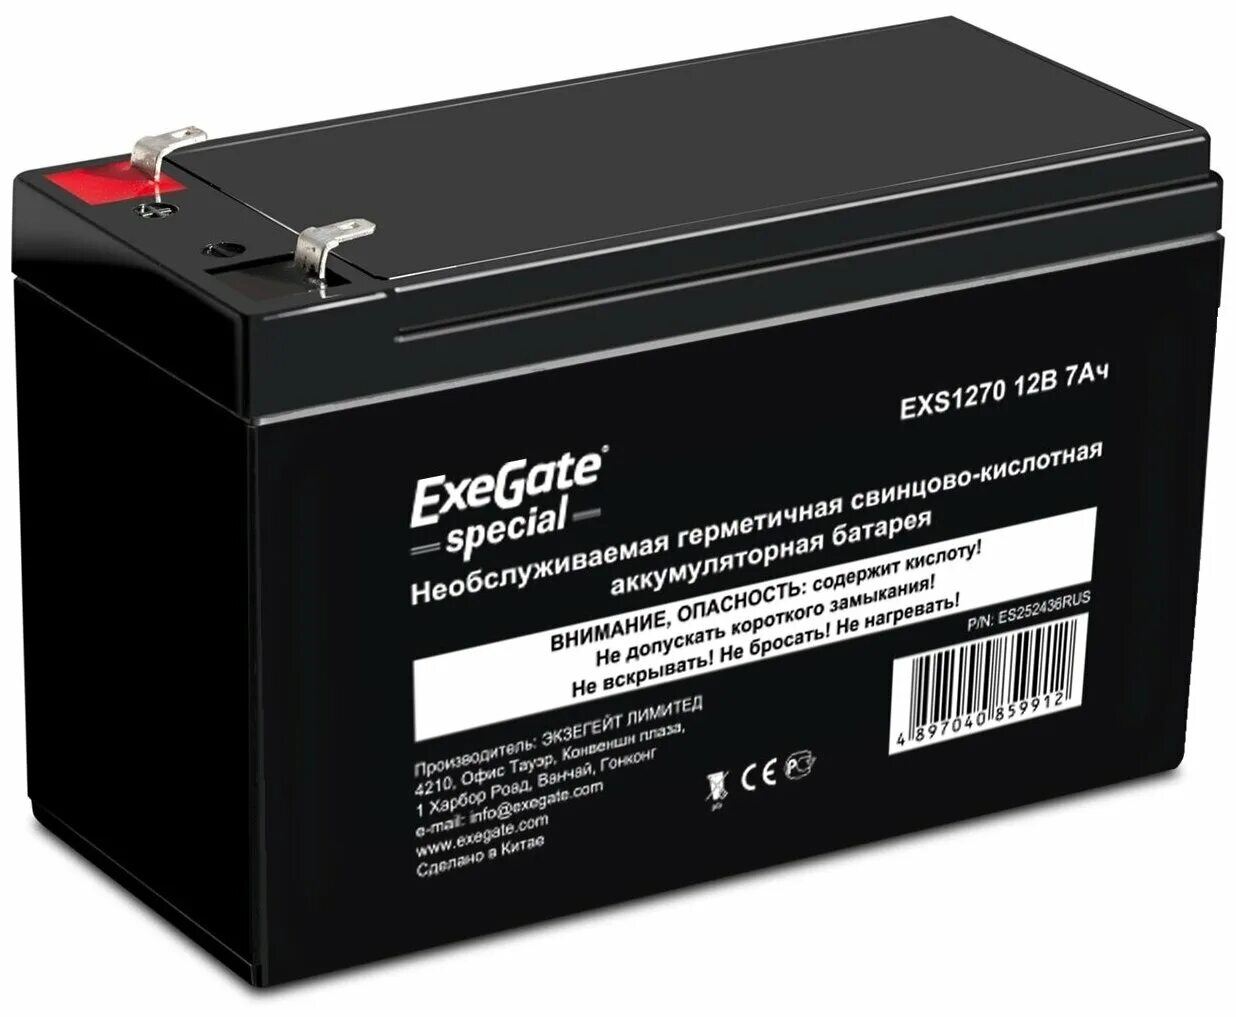 Exegate 12v. Аккумуляторная батарея для ИБП Delta DTM 1207 12v 7ah. Батарея Exegate exs1290. Батарея для ИБП dtm1212. Аккумулятор Delta DTM 1207 (12v / 7ah).